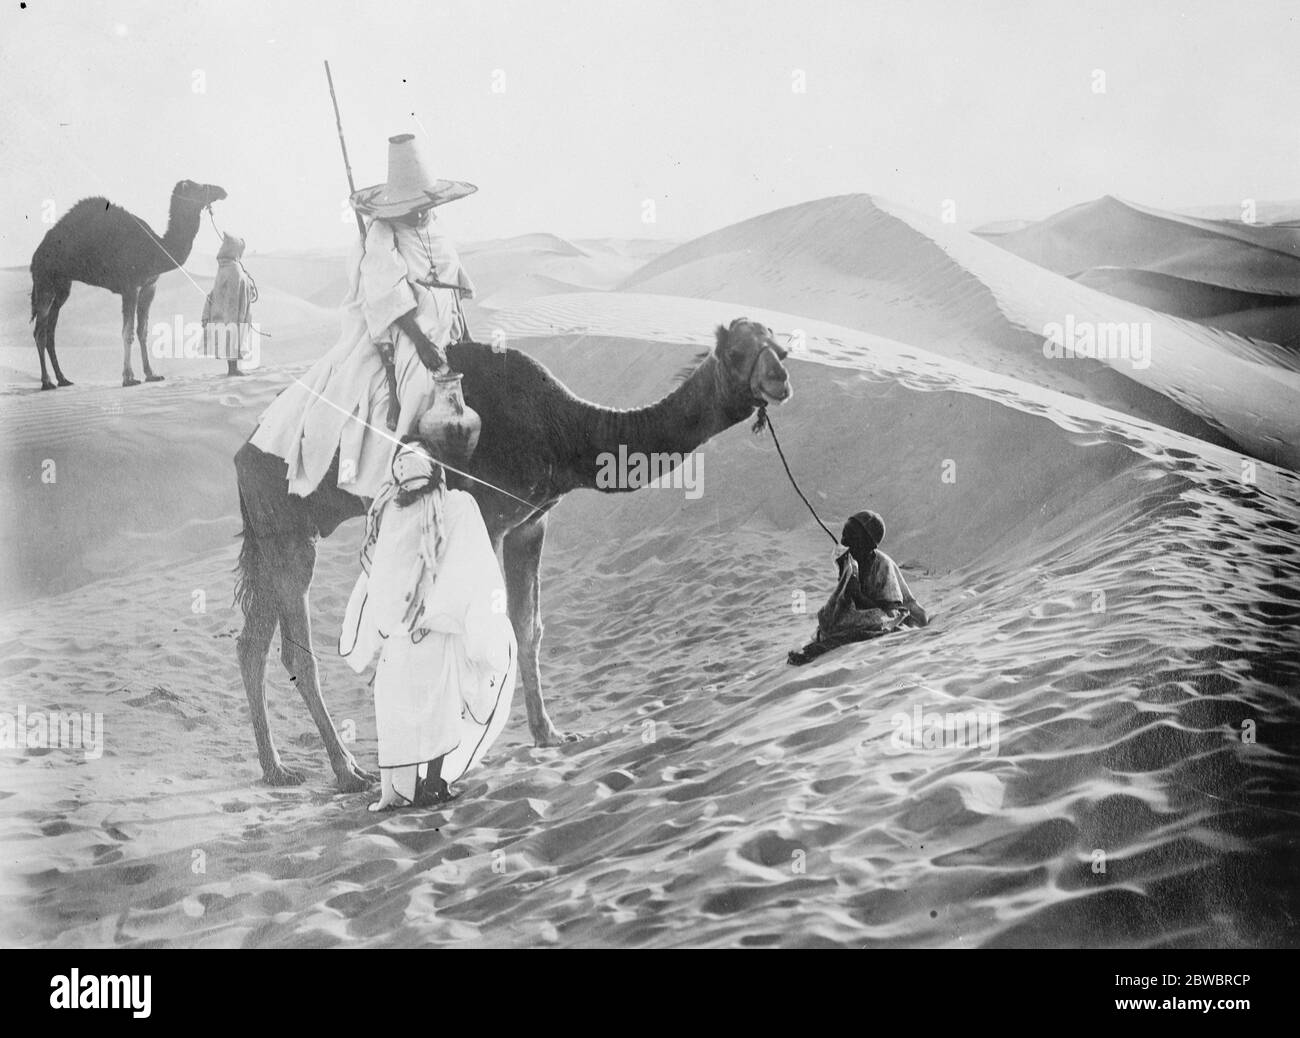 Wo sie nicht haben Überschwemmungen . Eine Szene in der Sahara, zeigt einen arabischen Stammesmann, der einem weniger glücklichen Wanderer zu Fuß Wasser gibt. 12. Januar 1926 Stockfoto